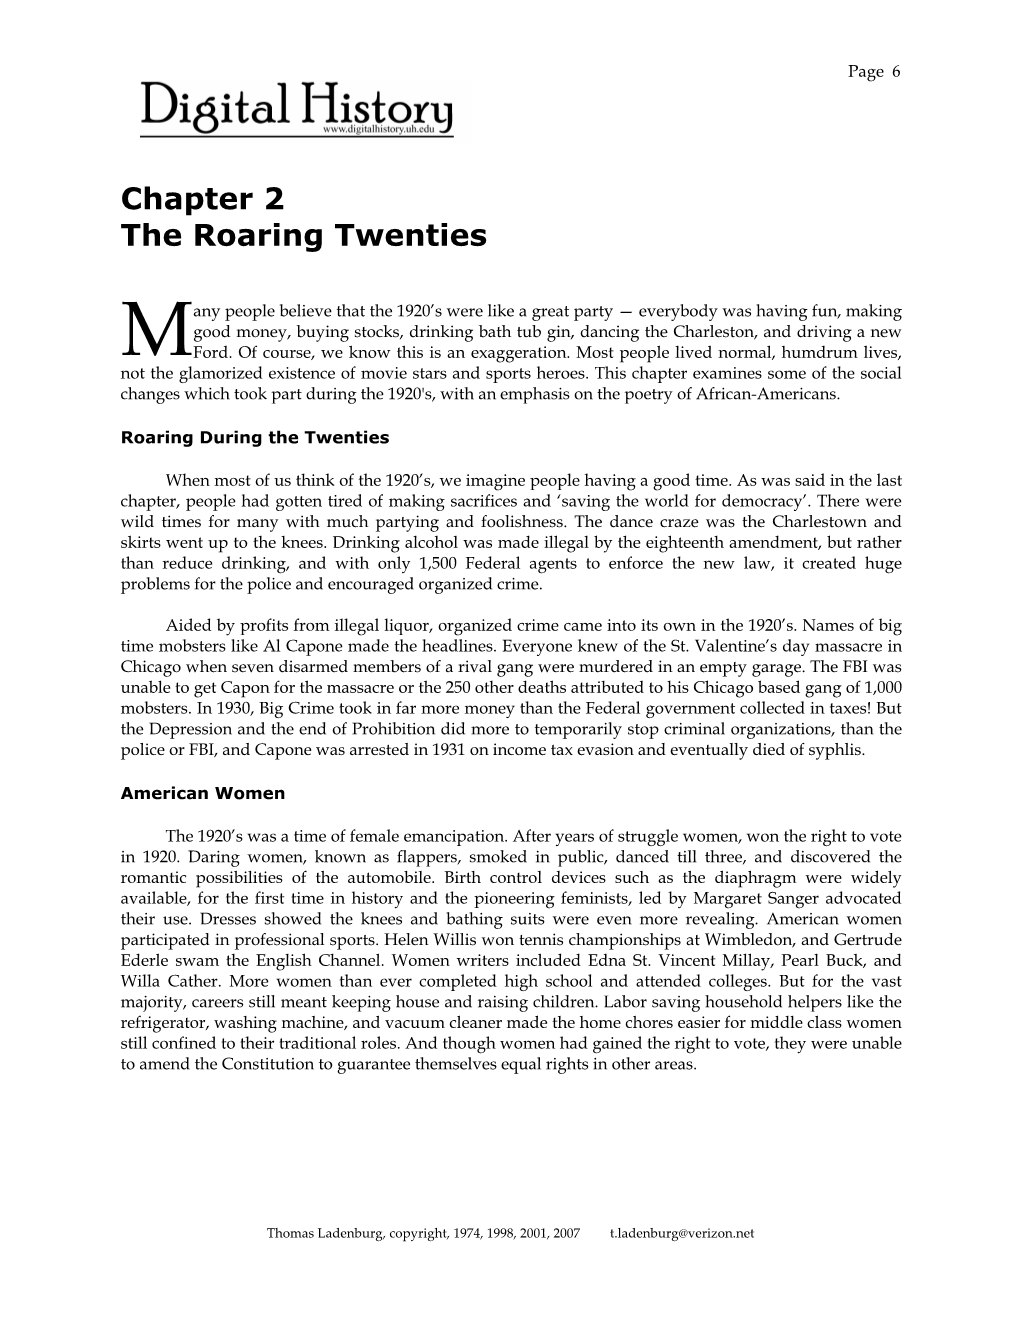 Chapter 2 the Roaring Twenties